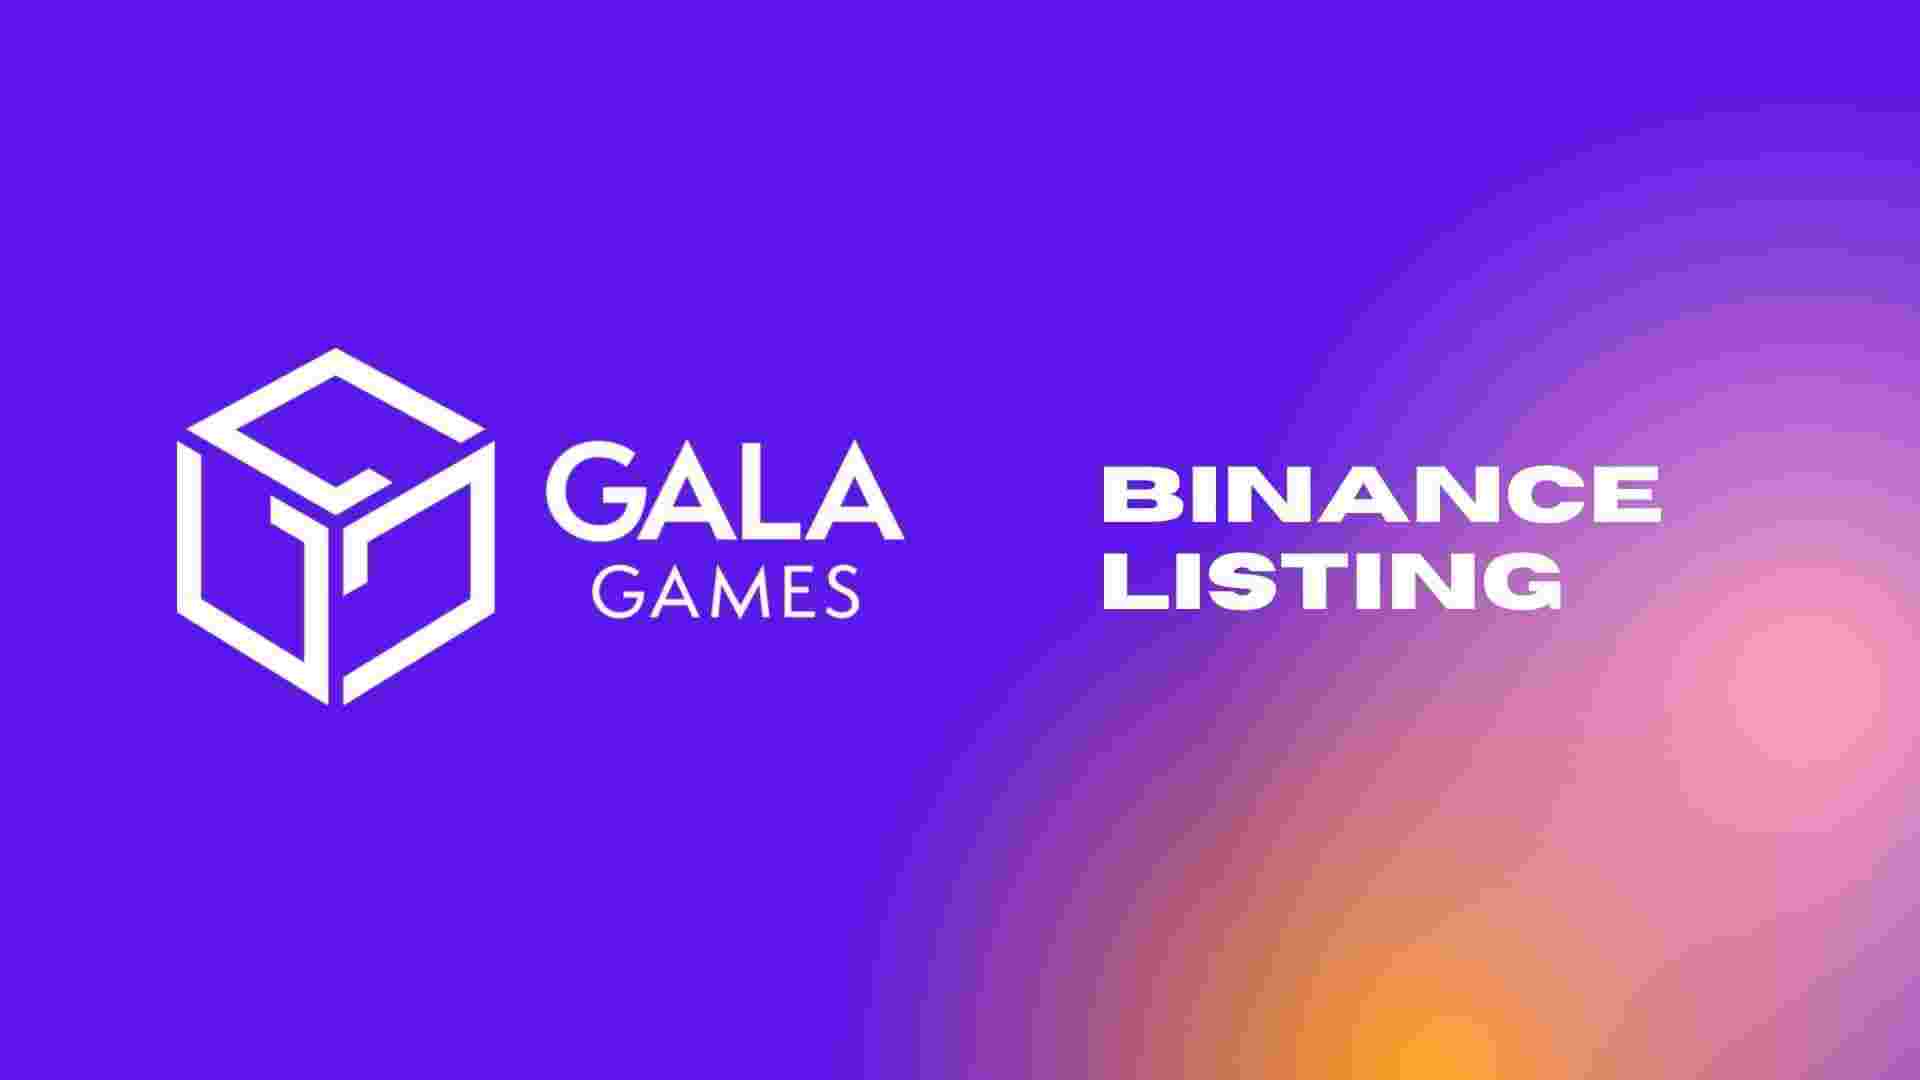 Die Binance Group meldet sich bei der Vertragsverlängerung von Gala Games